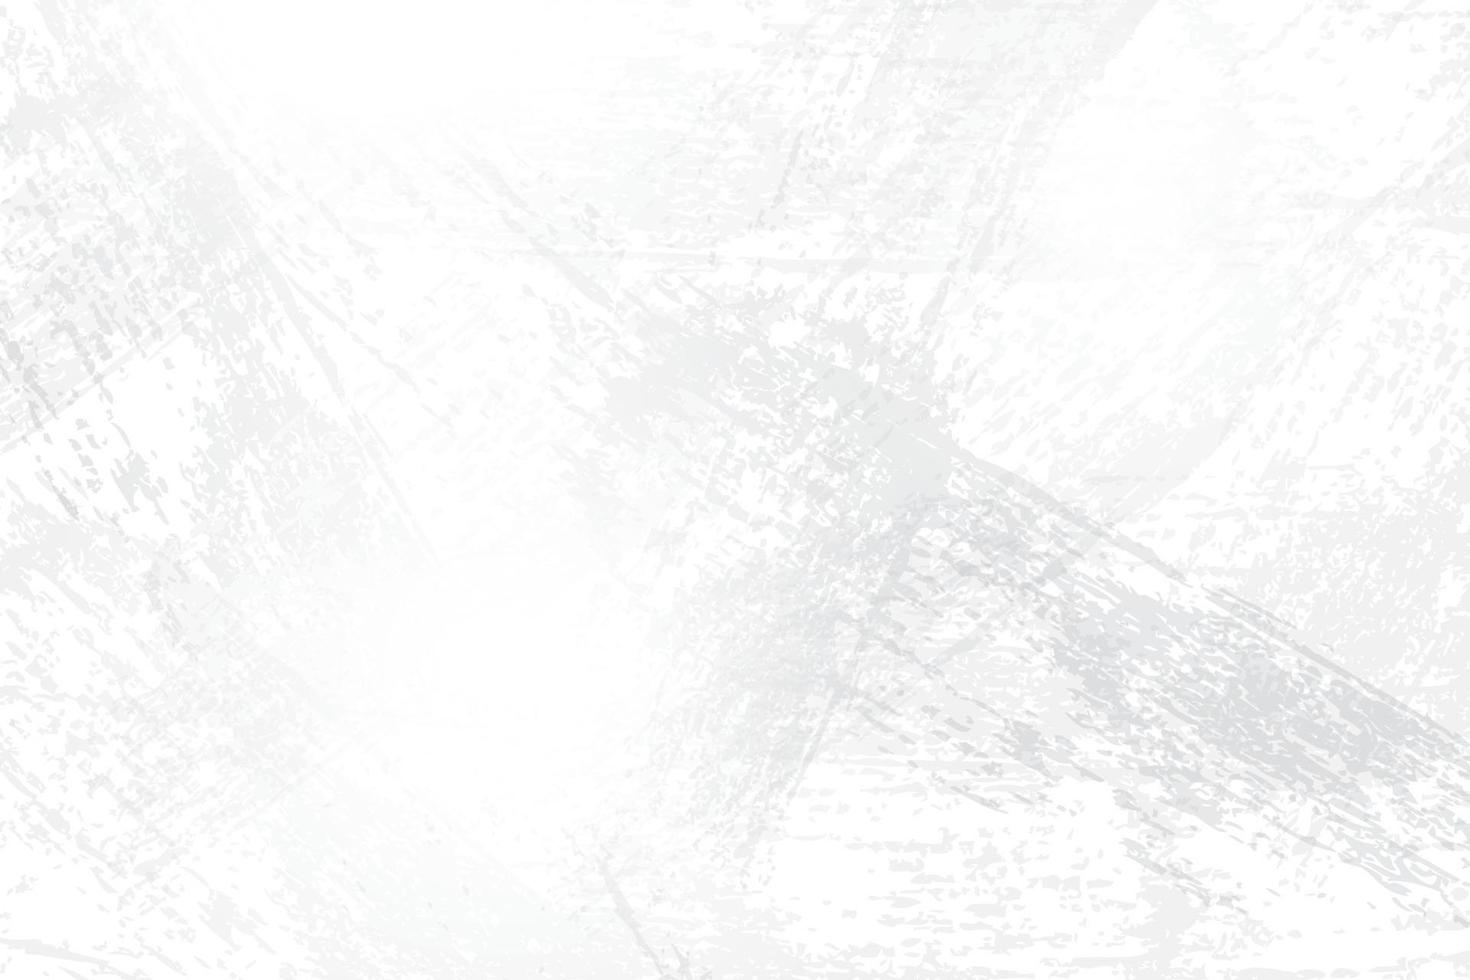 abstrakt grunge bakgrund vit och grå färg med retrostil. vektor illustration.